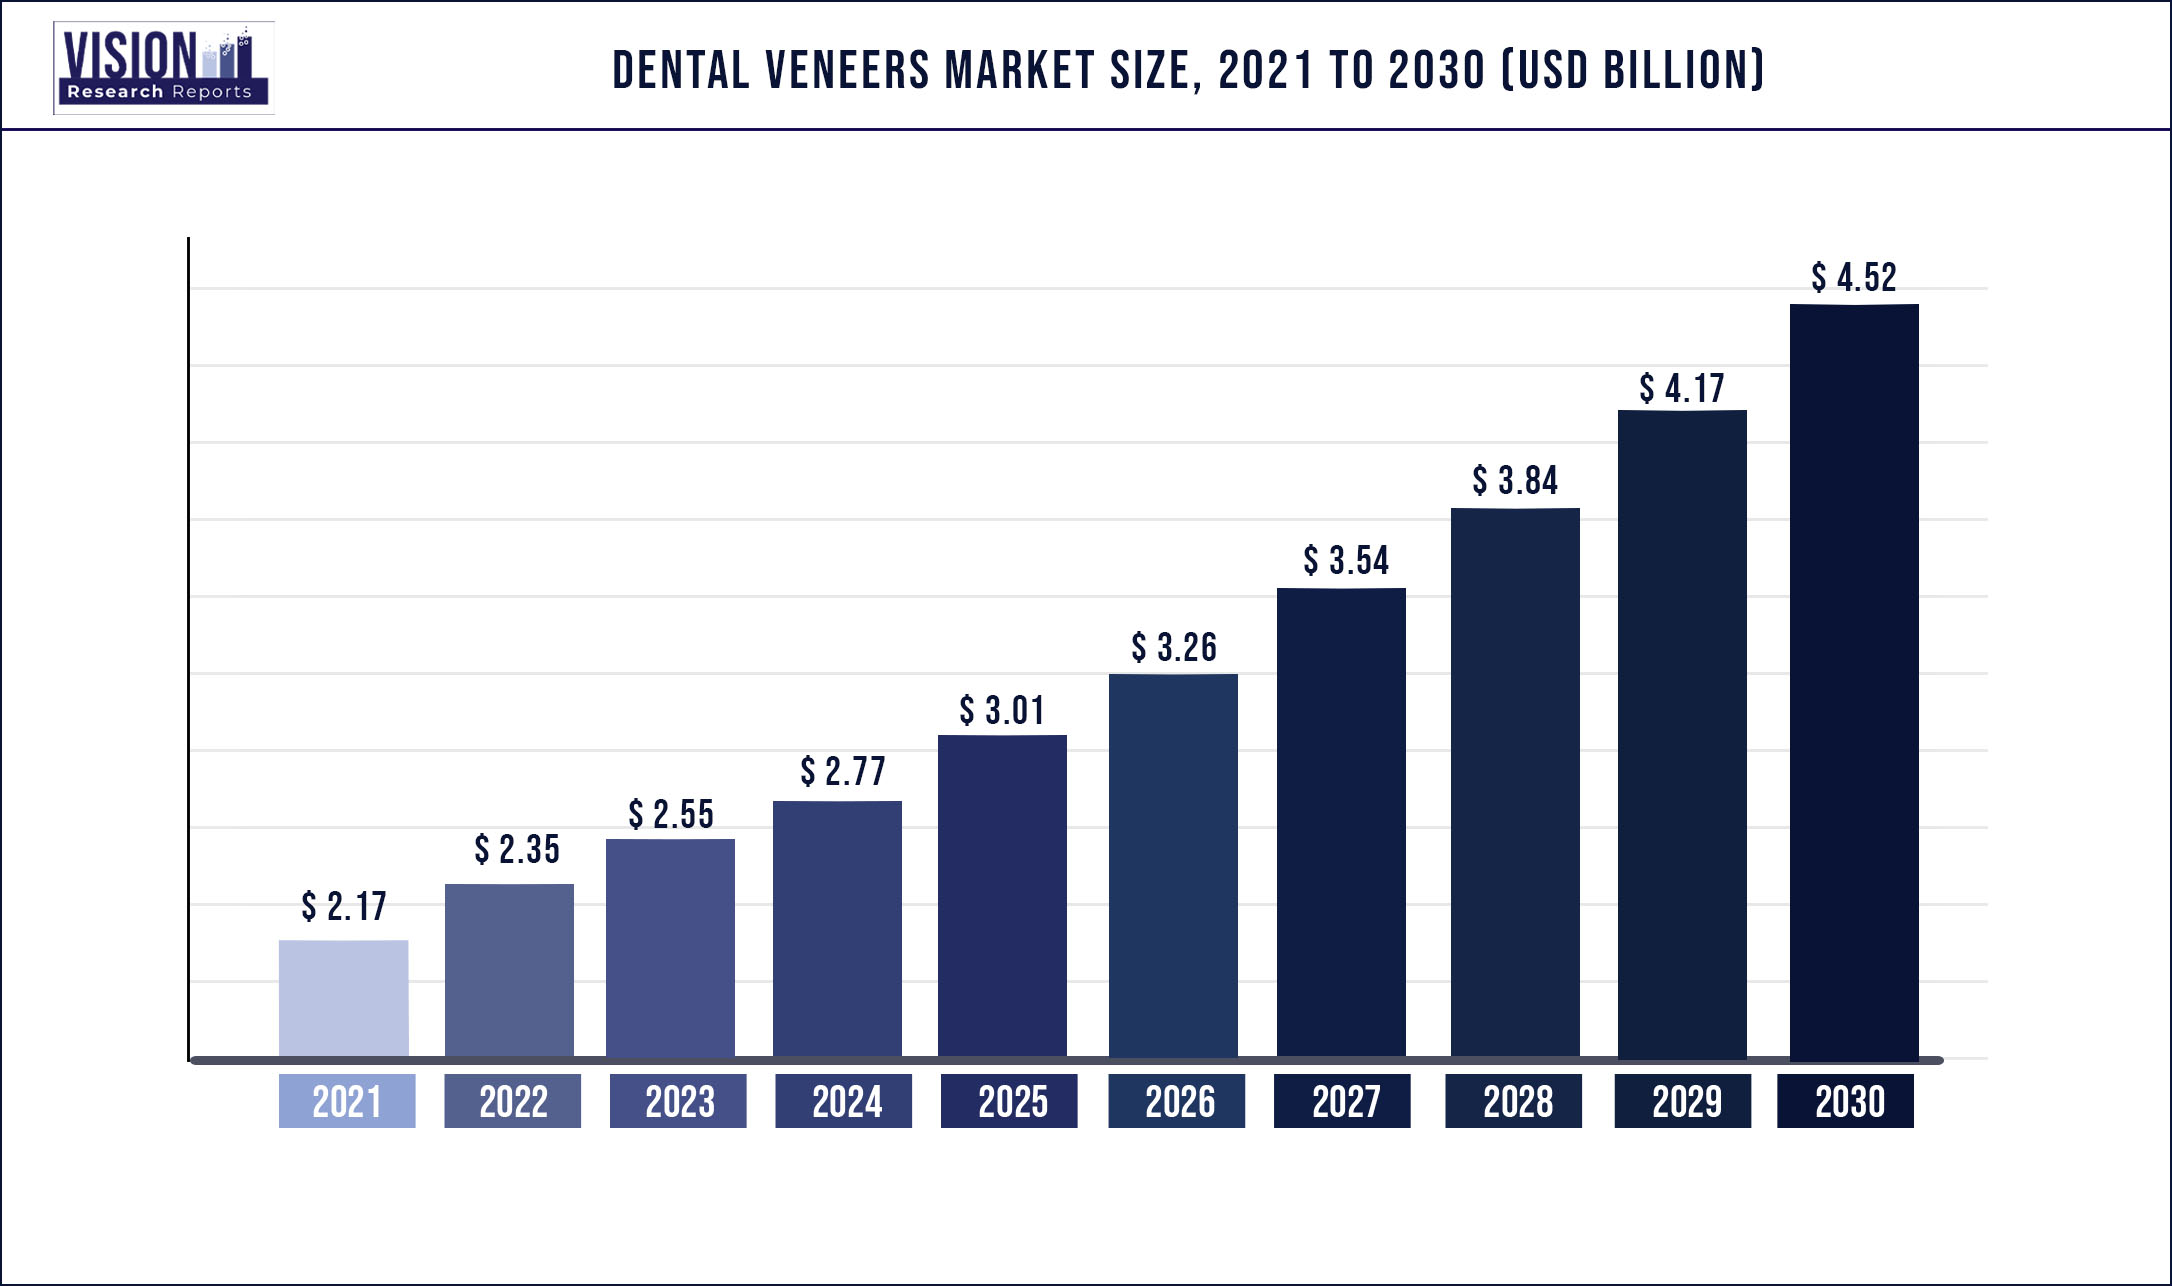 Dental Veneers Market Size 2021 to 2030